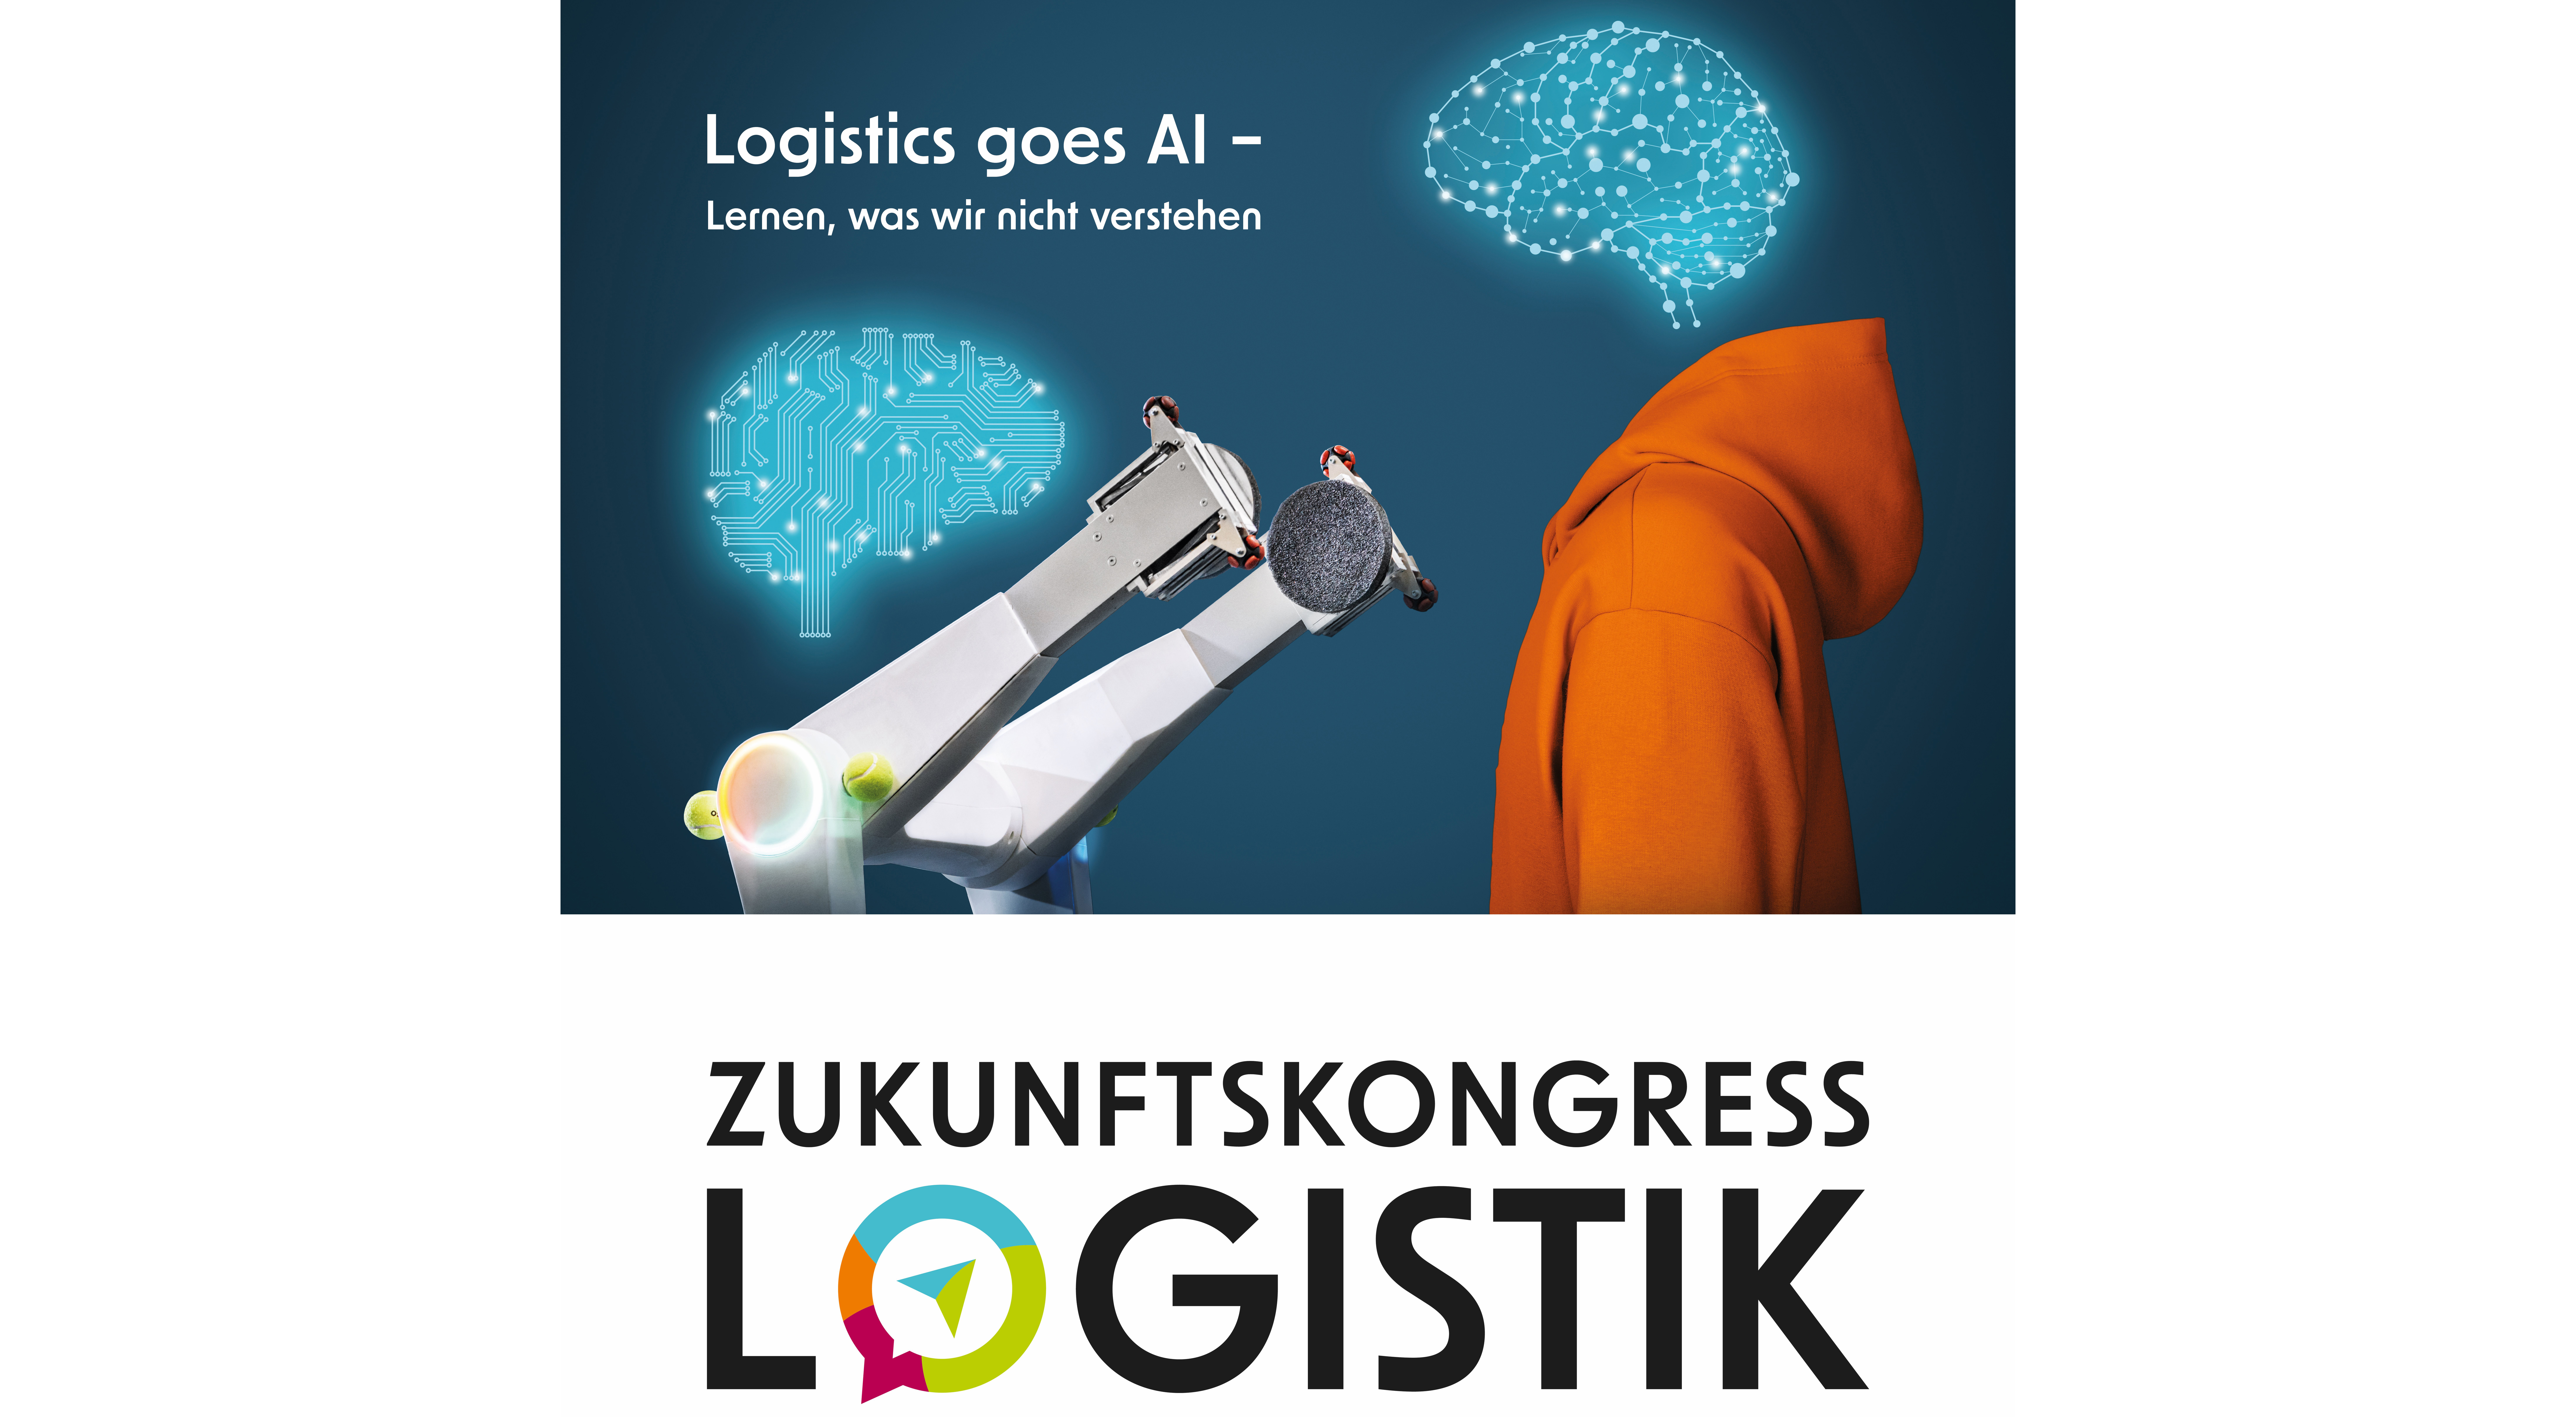 Logistics goes AI